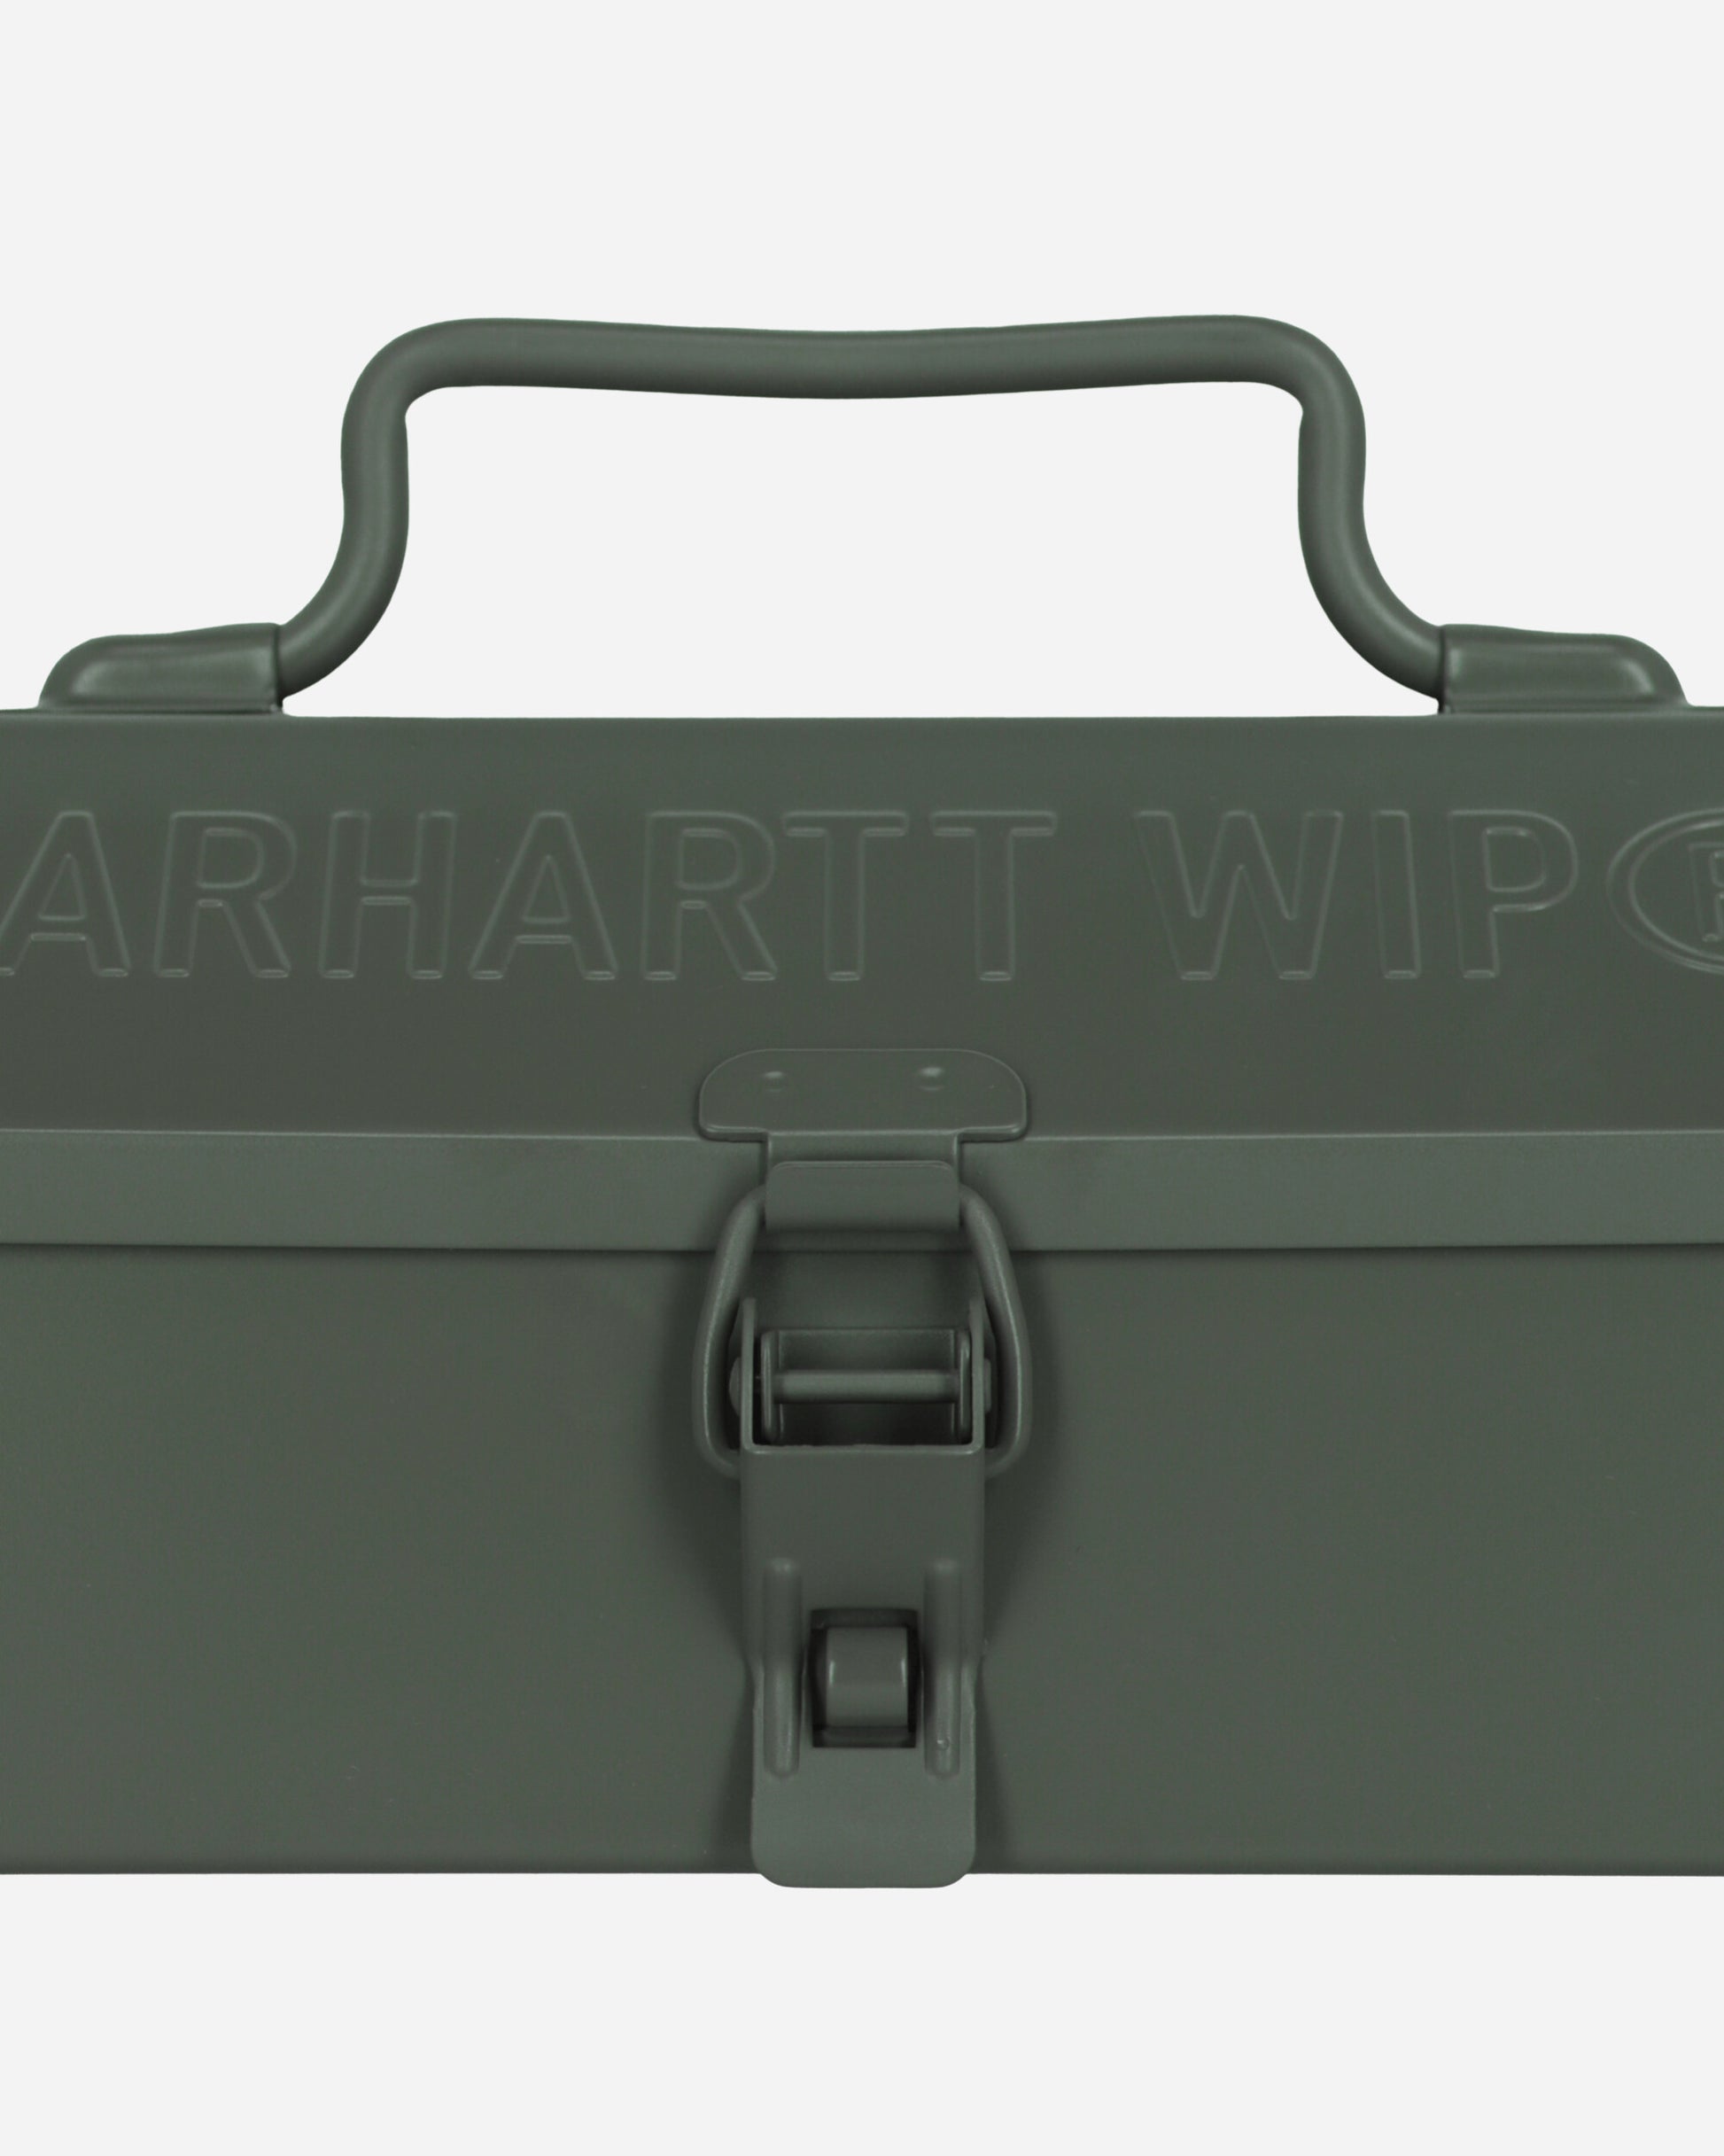 Carhartt WIP Tour Tool Box Smoke Green Equipment Camping Gear I033321 1NDXX